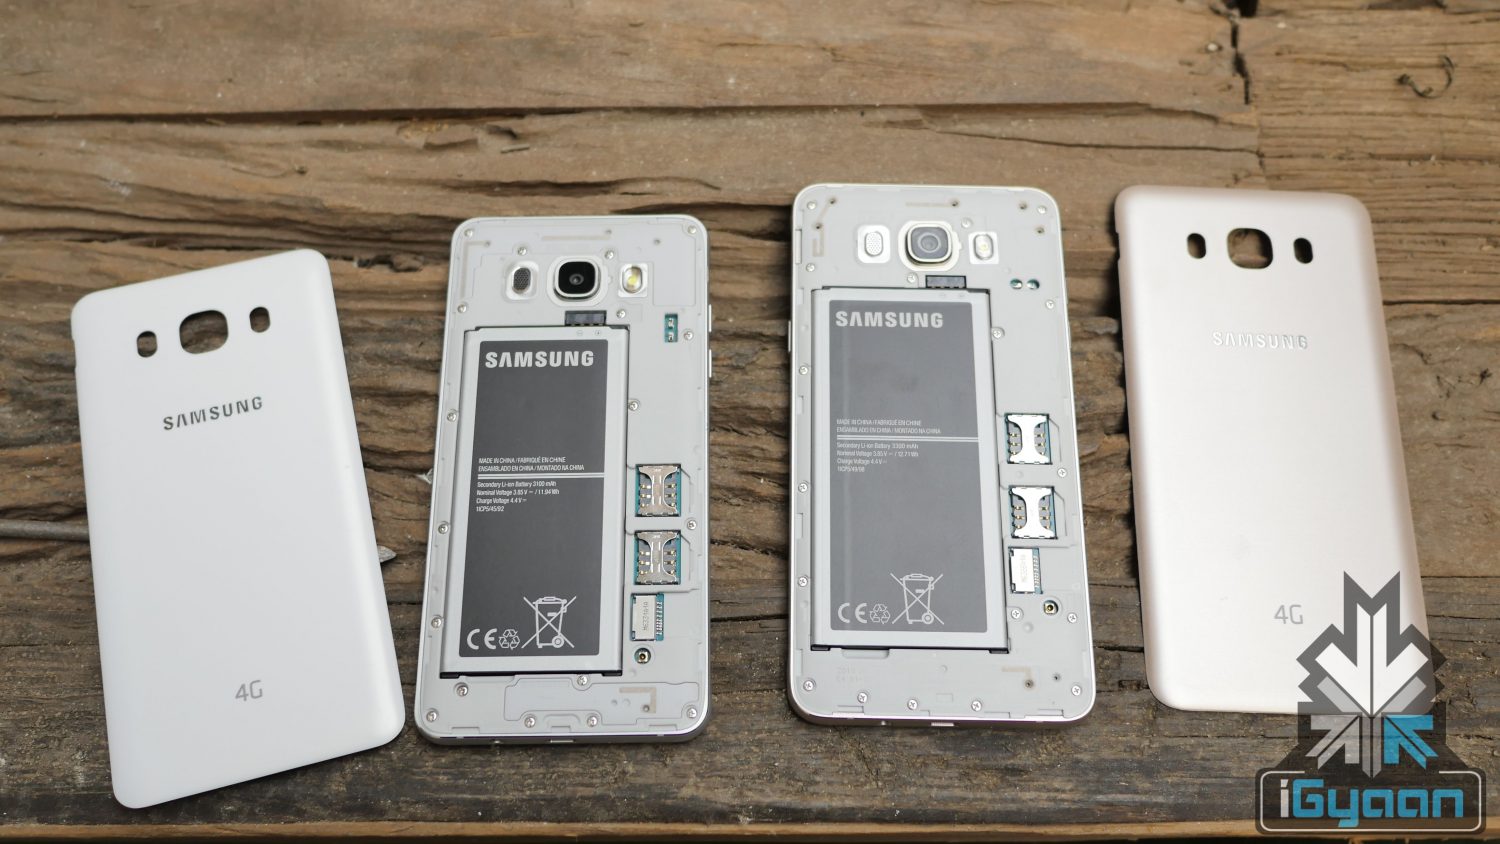 Samsung Galaxy J5 & J7 (6) iGyaan 0